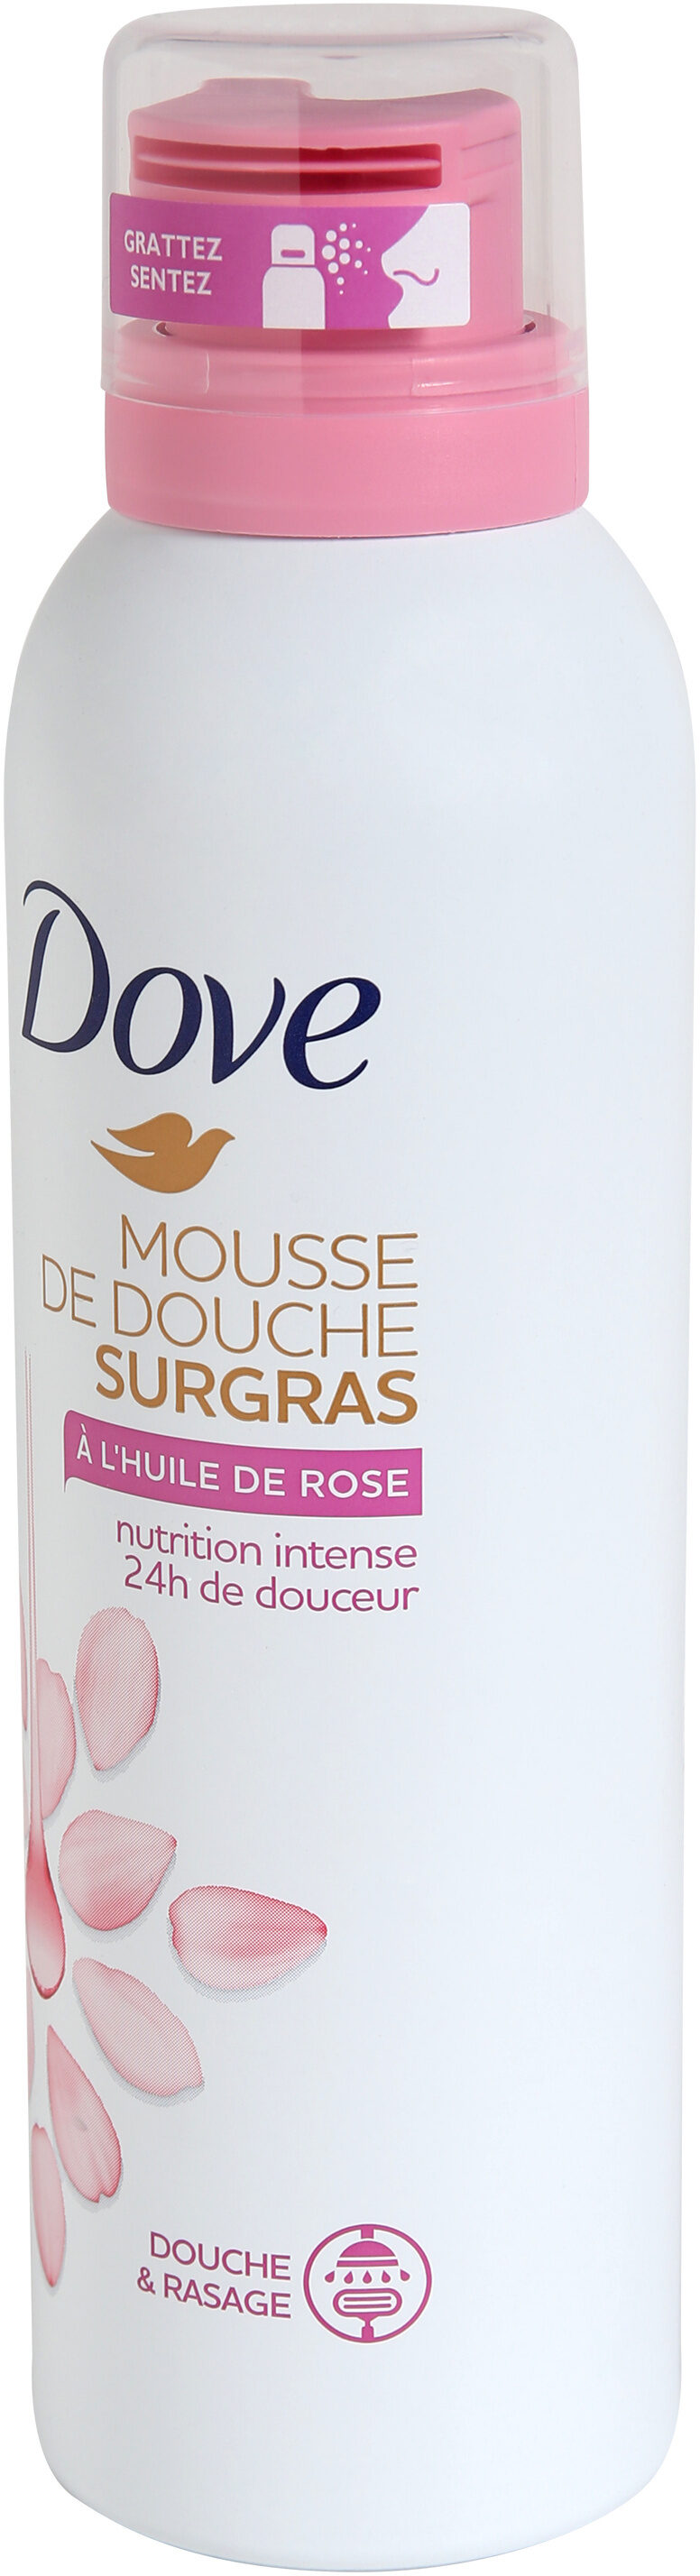 Dove Surgras Gel Douche Mousse Nourrissante Huile de Rose 24h - Tuote - fr